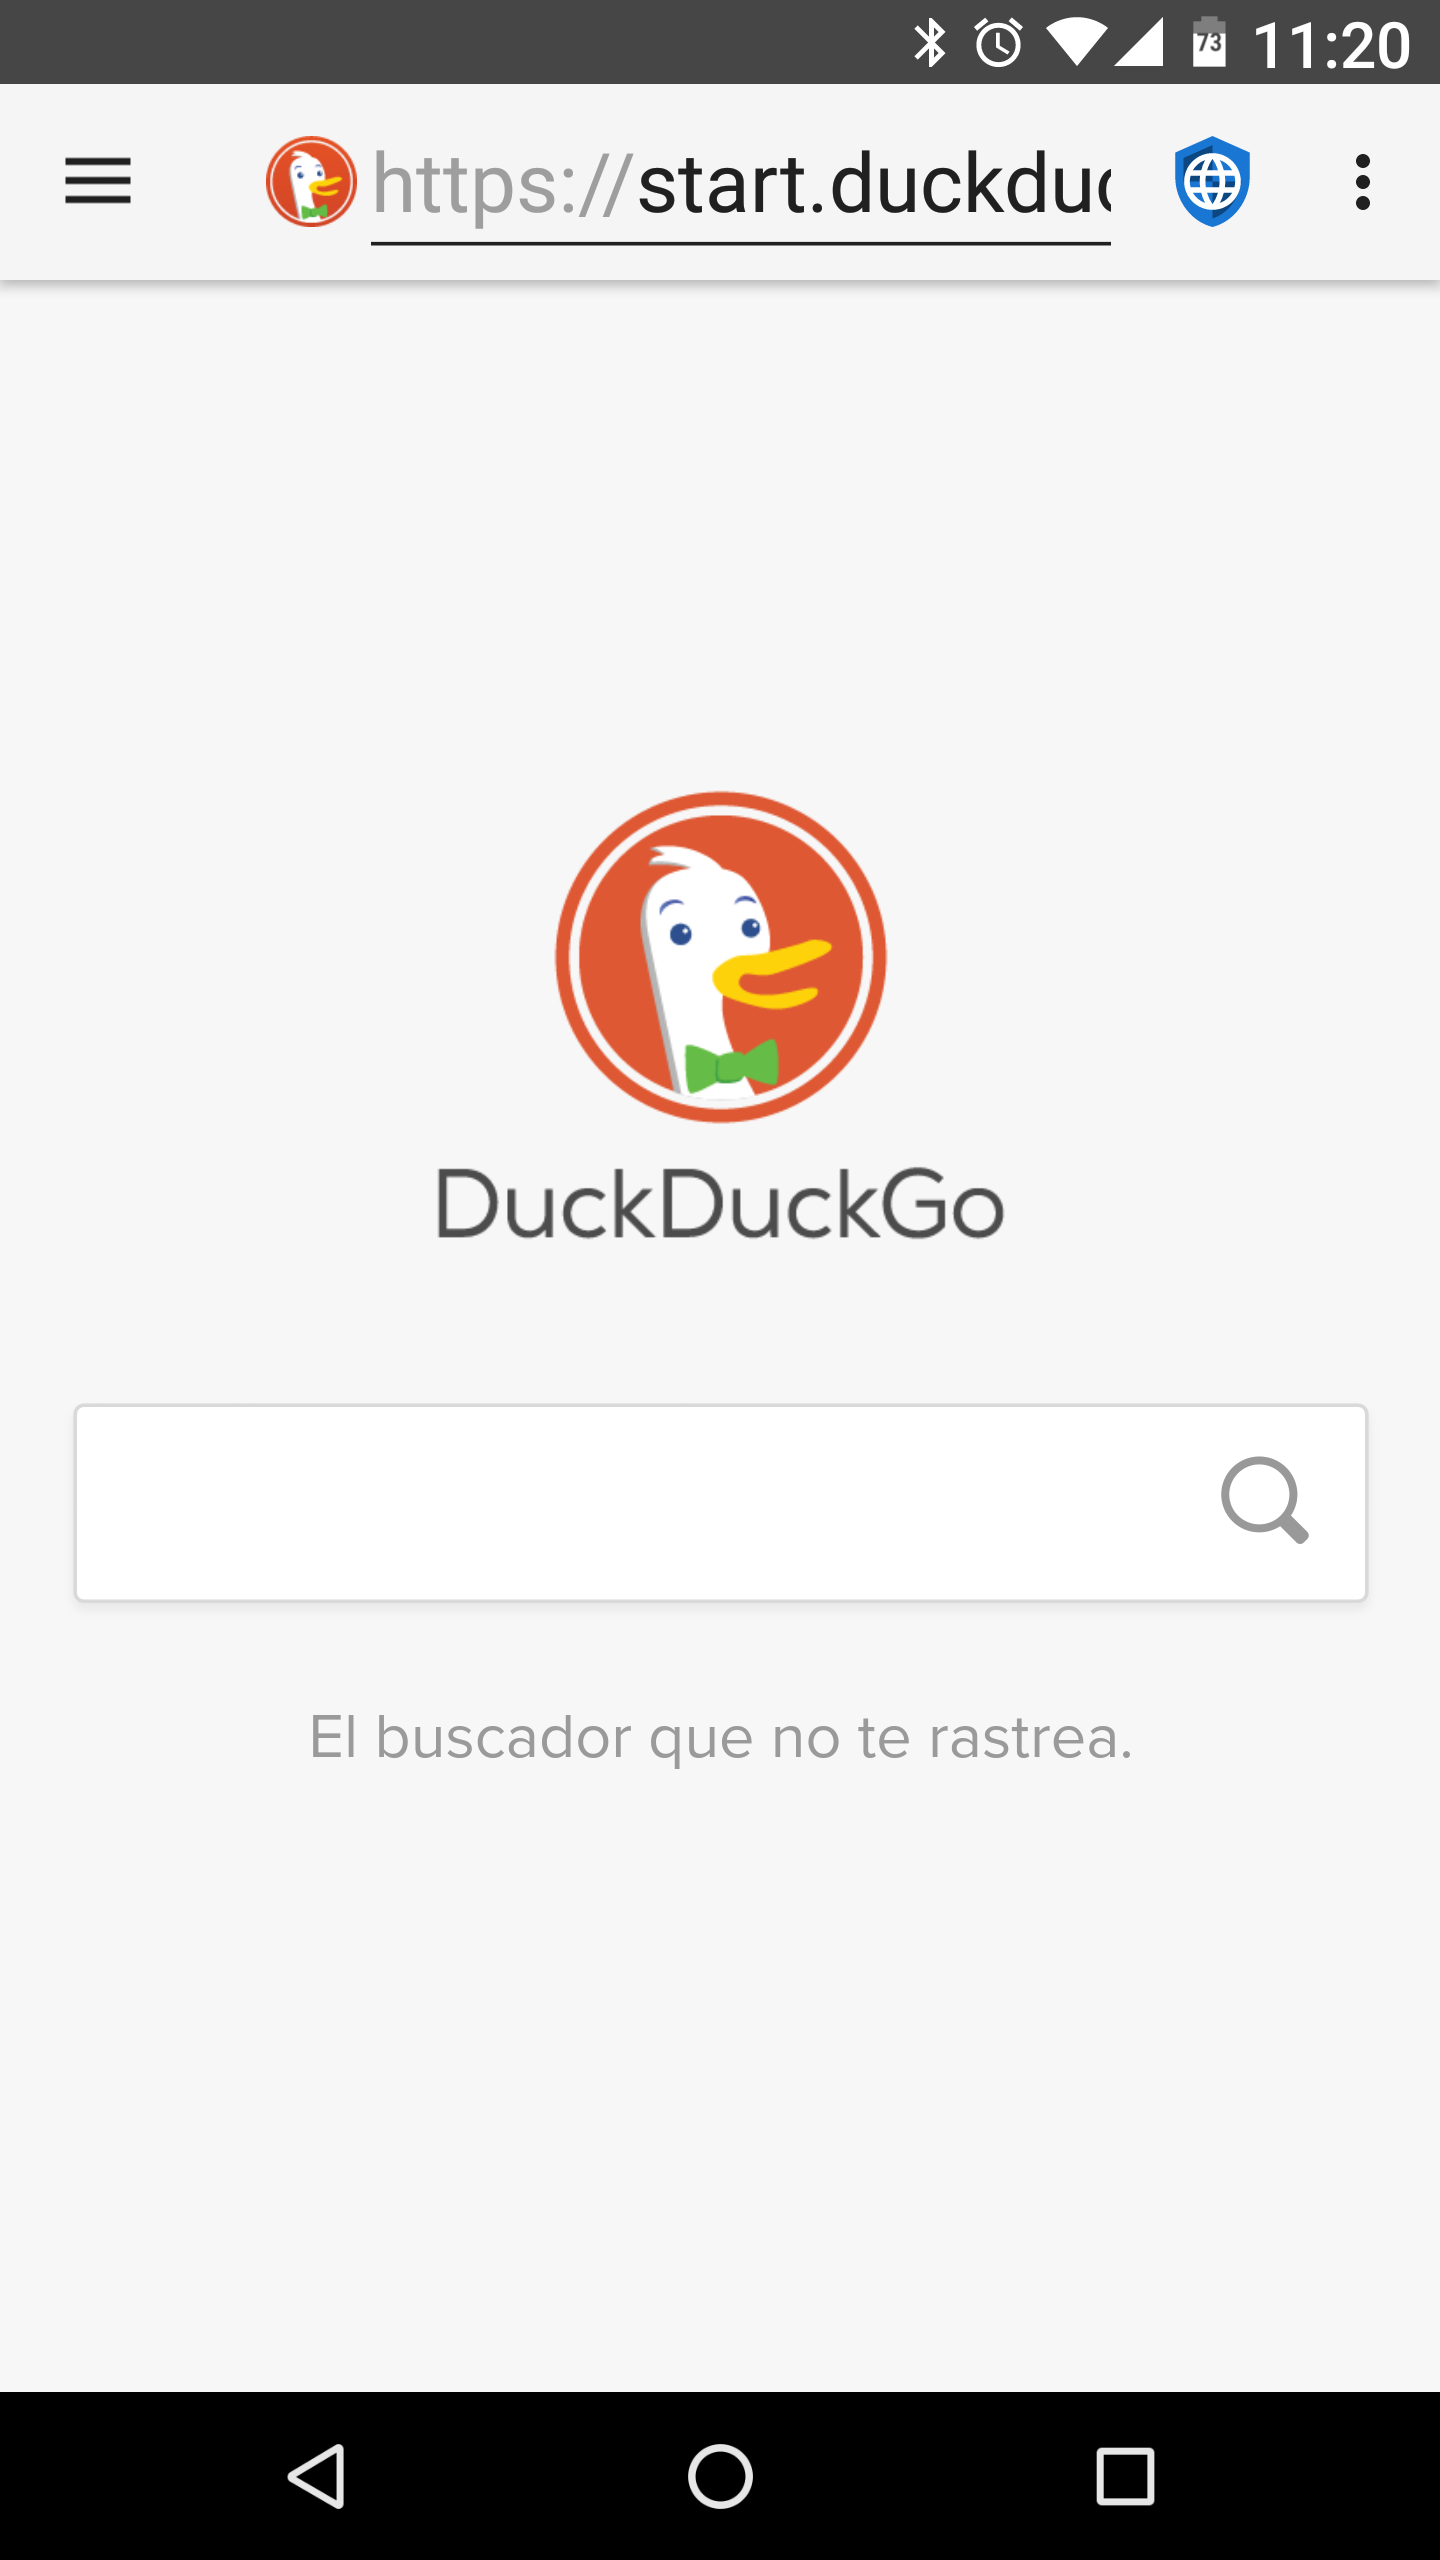 fastlane/metadata/android/es/phoneScreenshots/01 - DuckDuckGo - es.png